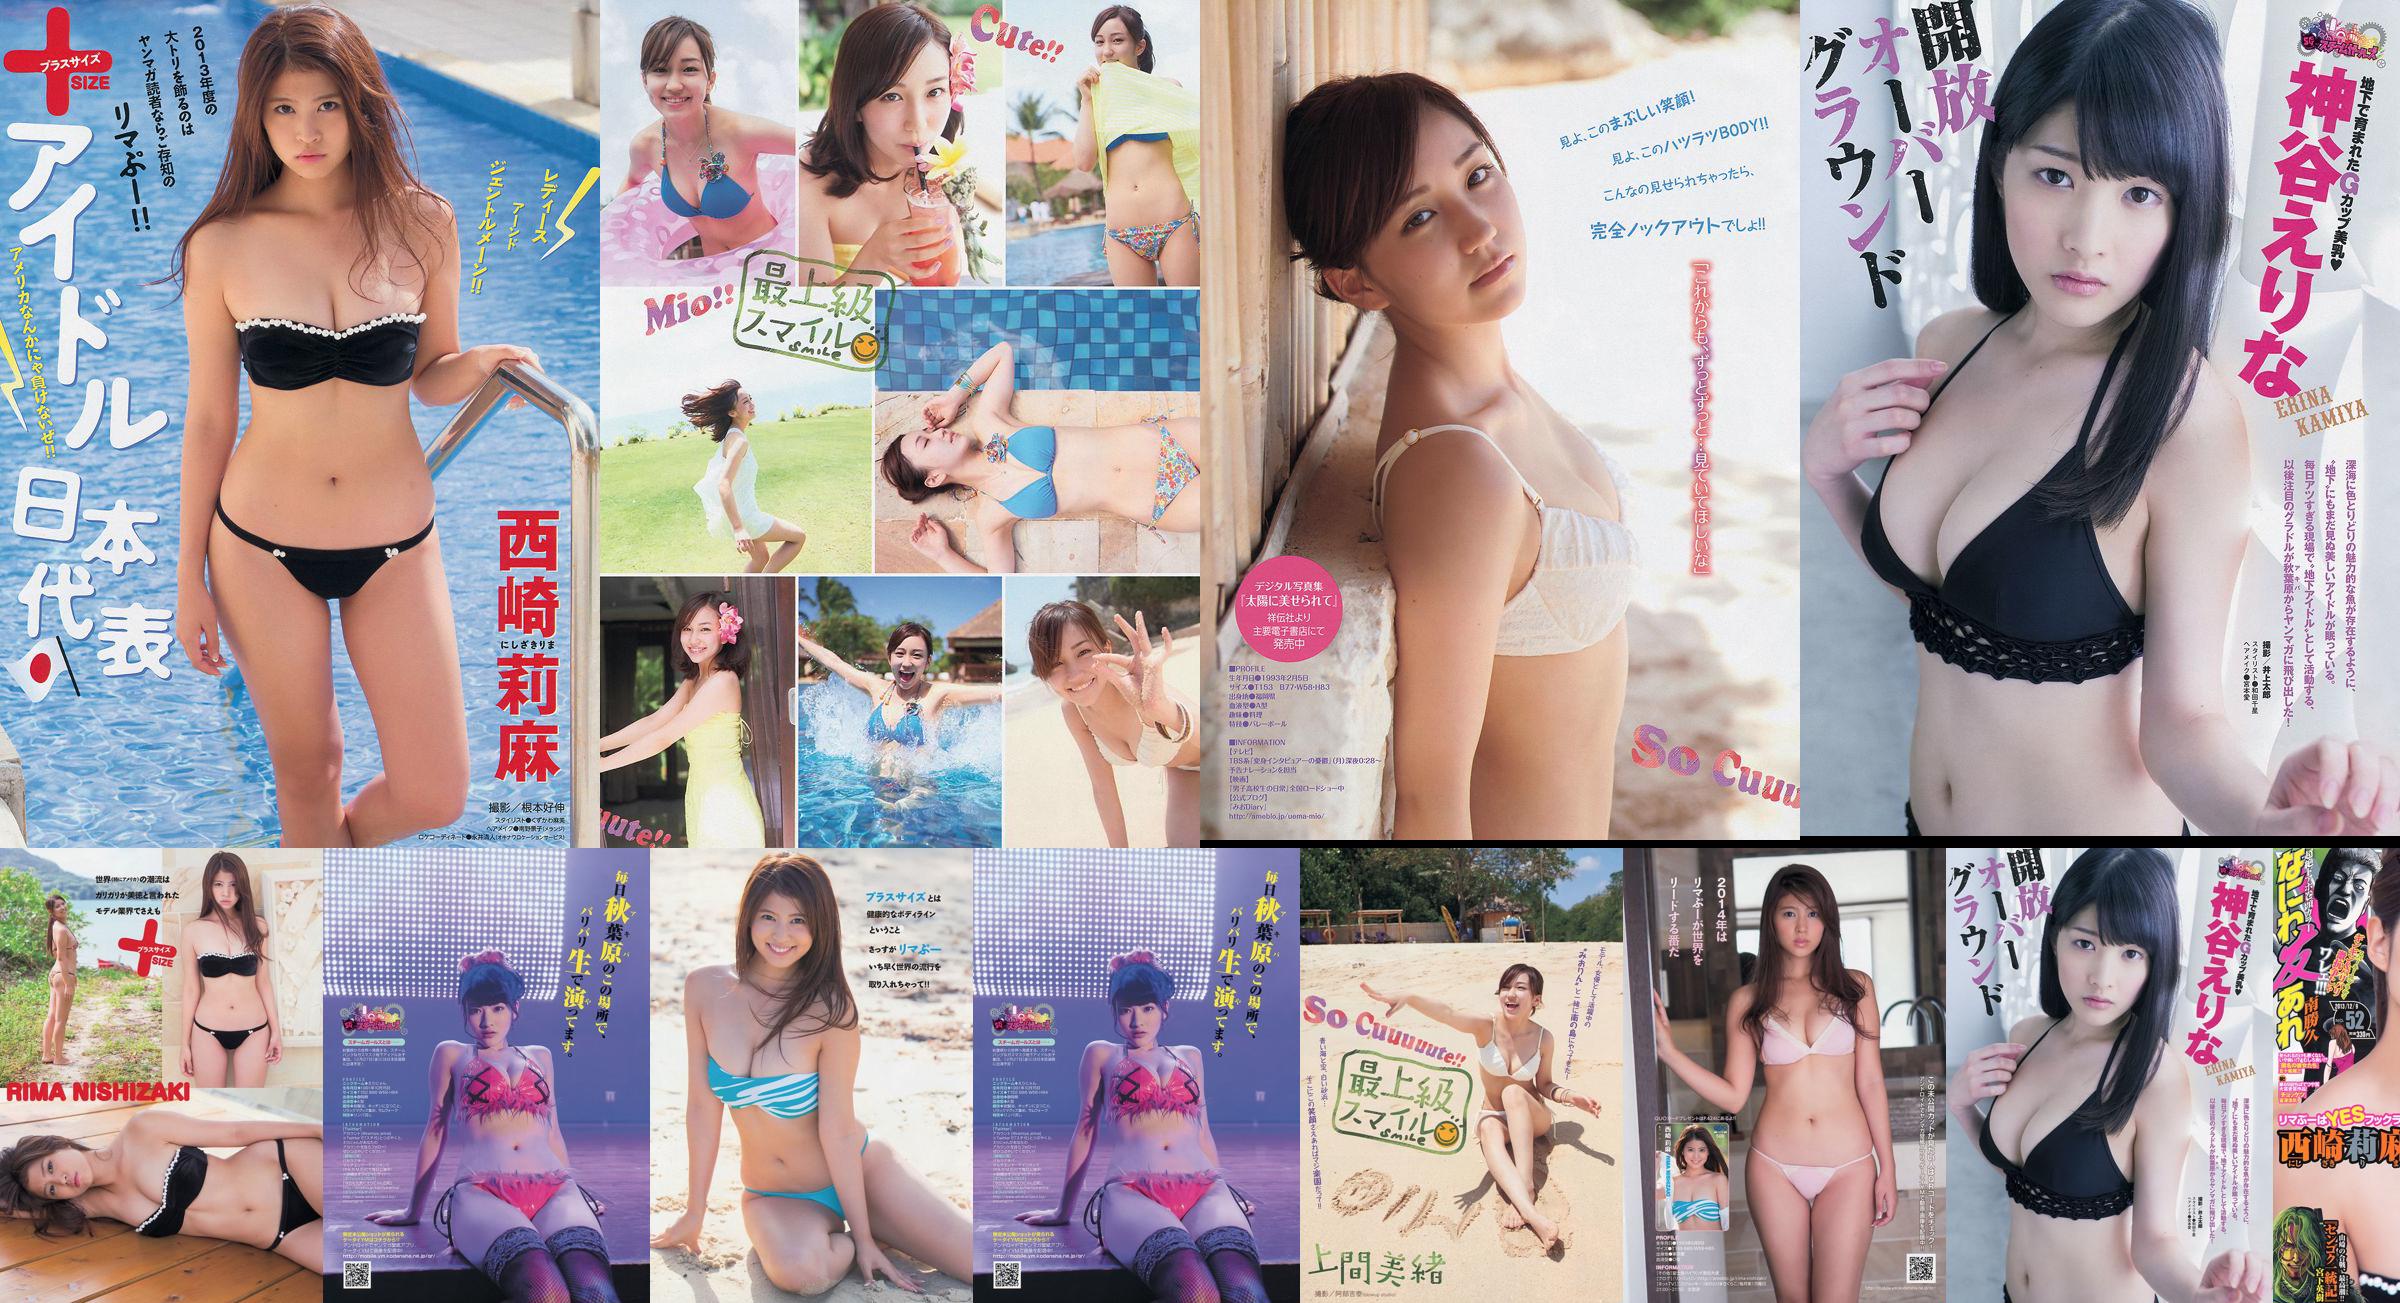 [นิตยสาร Young] Rima Nishizaki Mio Uema Erina Kamiya 2013 No.52 Photo Moshi No.e05c6d หน้า 1